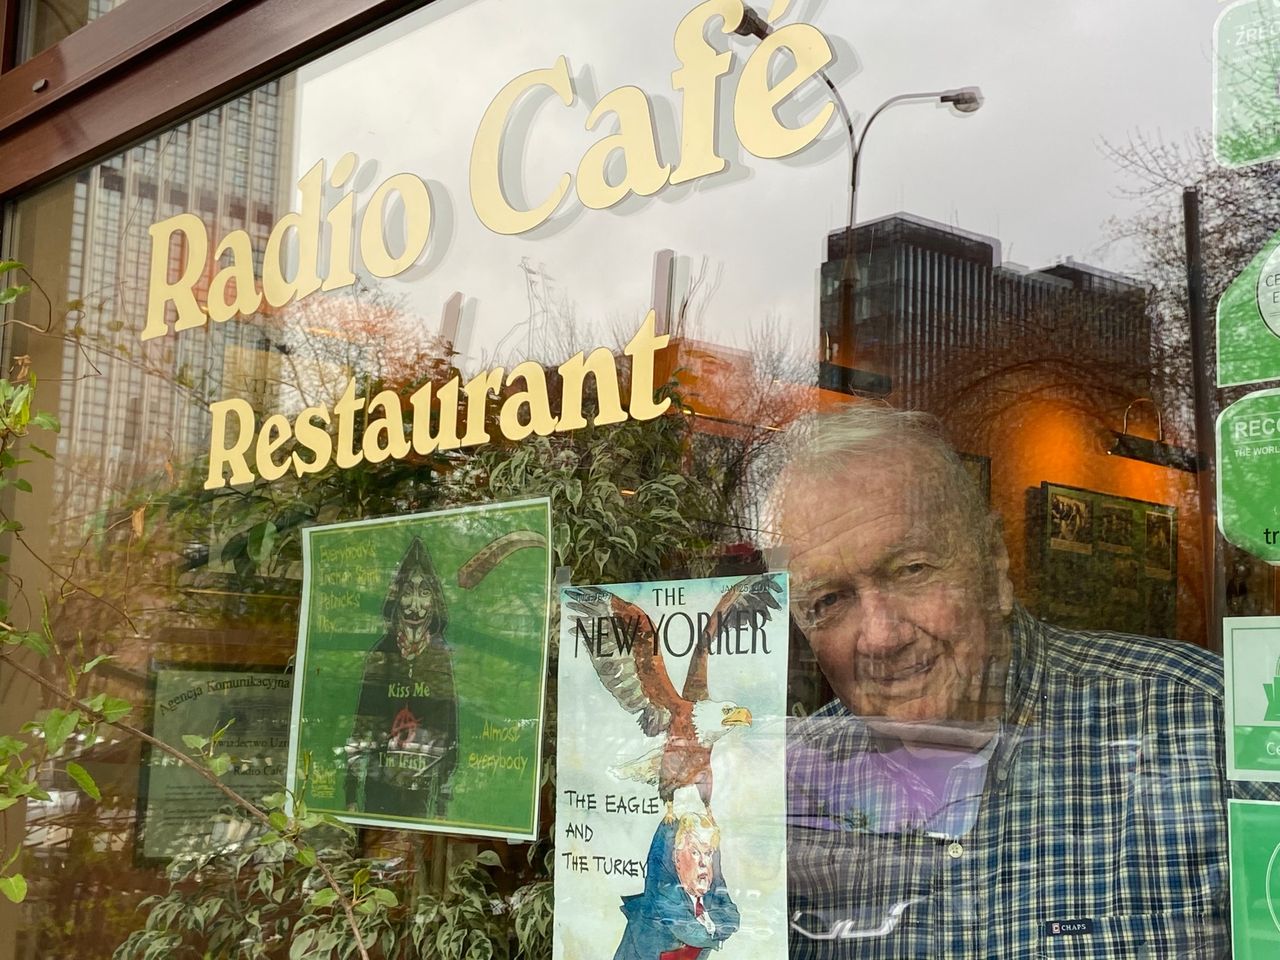 85-letni restaurator z Warszawy sprzedaje mieszkanie, by uratować biznes i pracowników